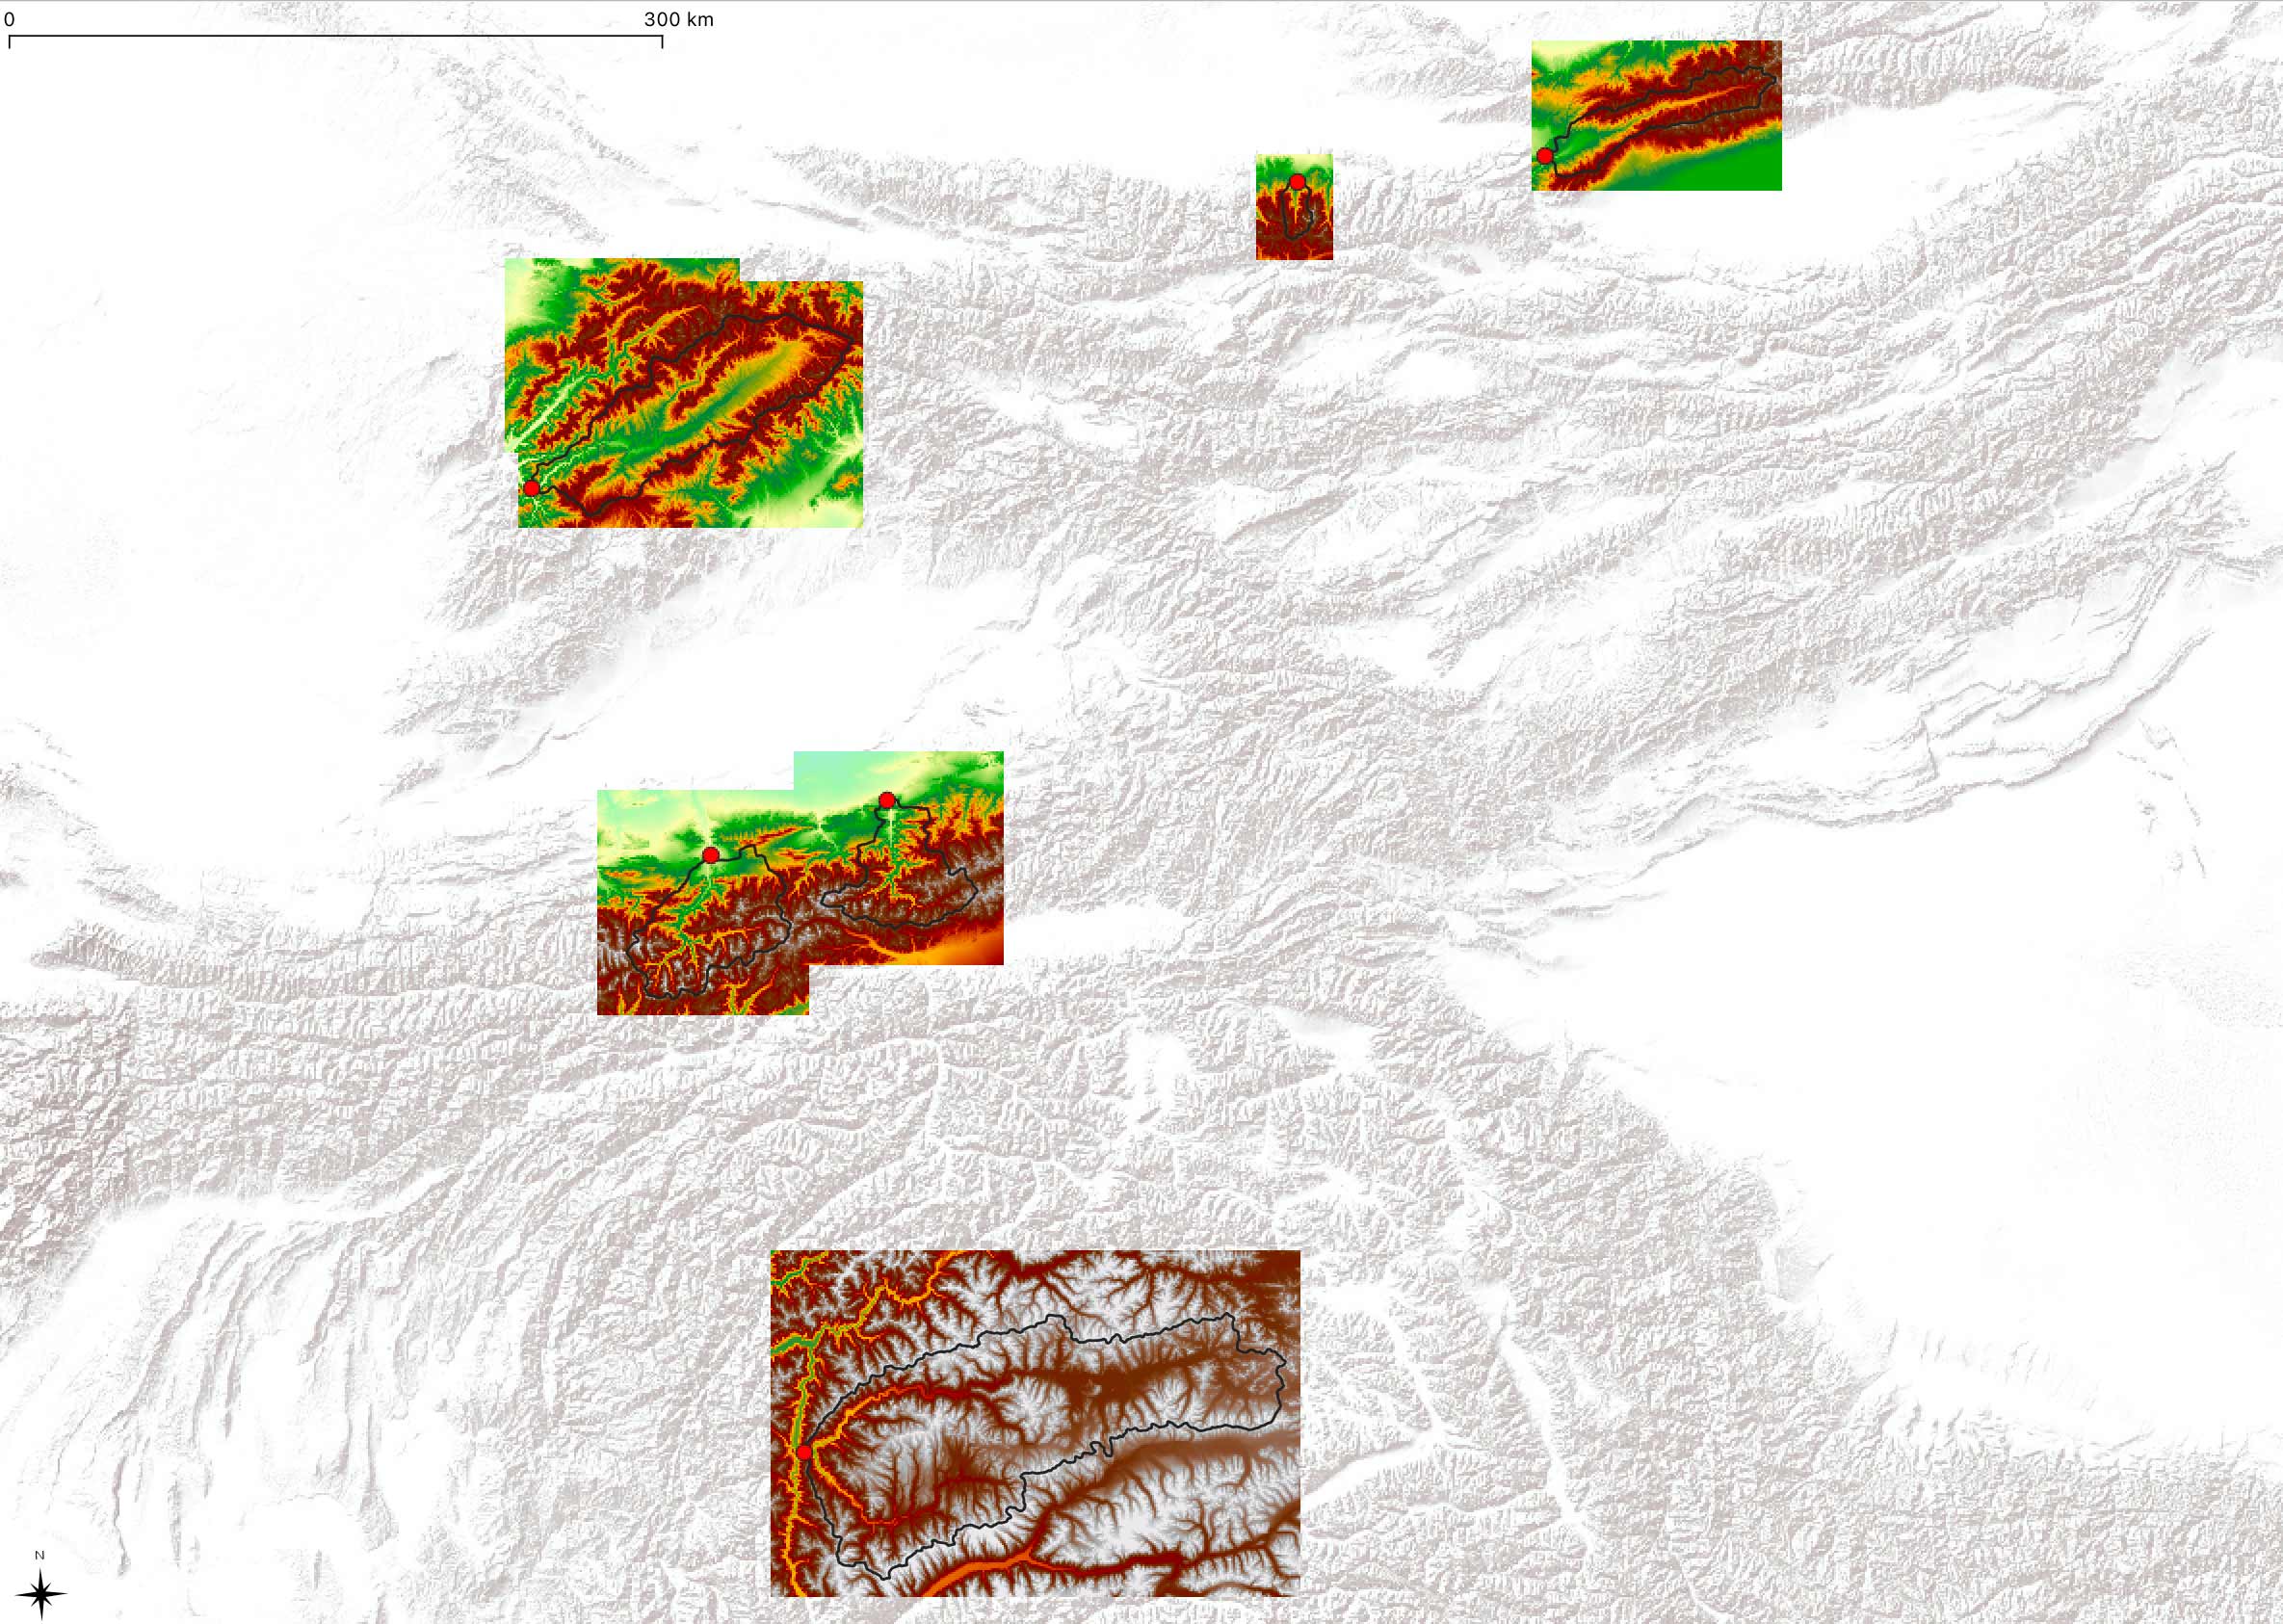 SRTM digital elevation models for catchments. Source Data: SRTM [@USGS_2020]